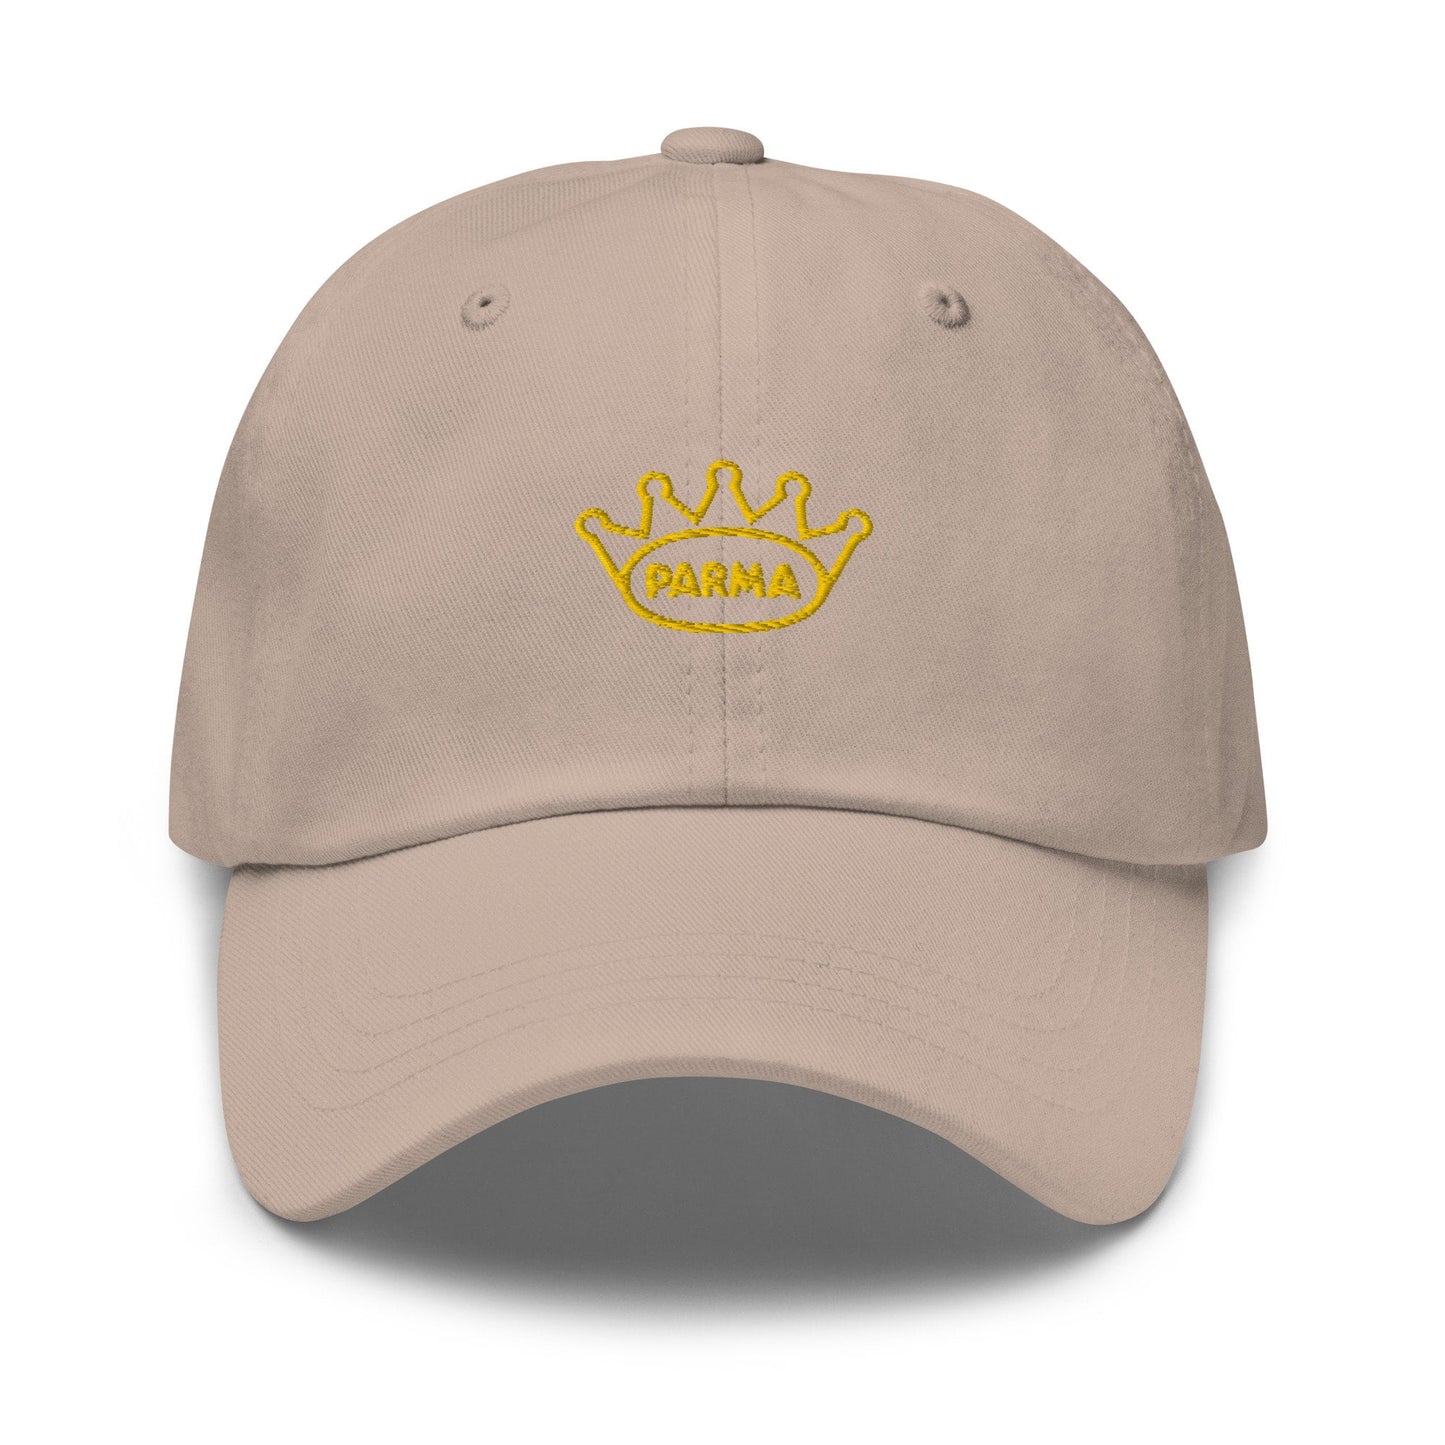 Prosciutto di Parma Hat - Italian Deli Fan gift - Parma Ducal Crown Logo - Cotton embroidered Cap